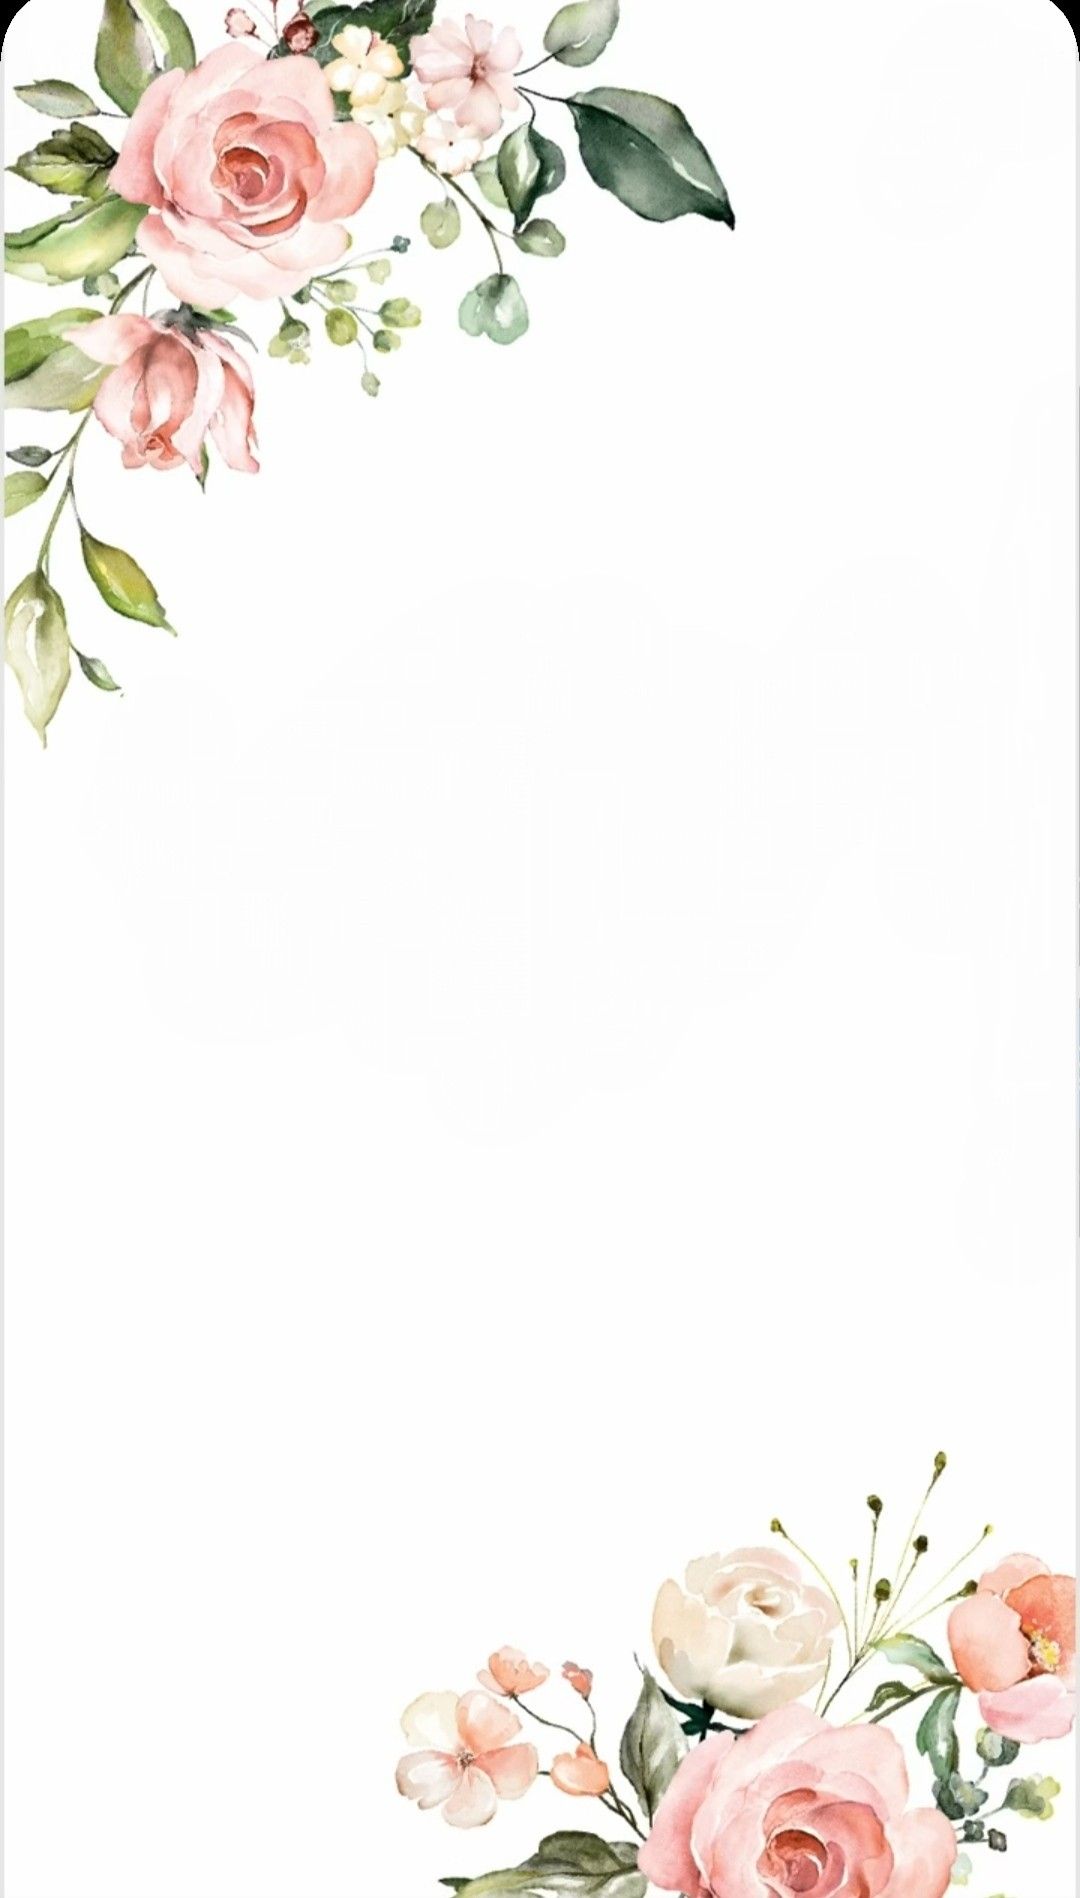 Hình vẽ hoa trang trí góc giấy A4 siêu sáng tạo